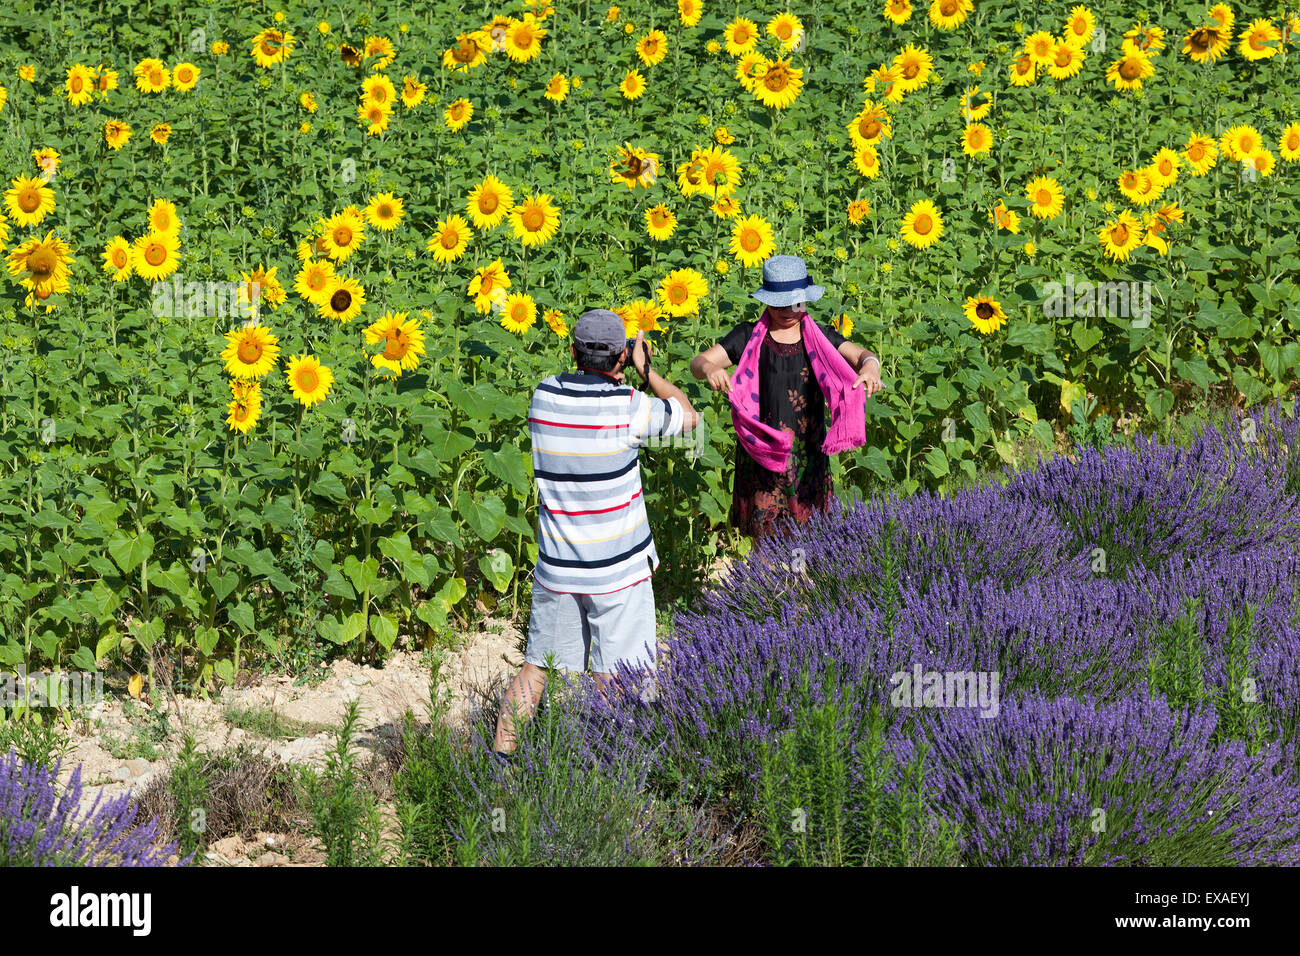 Un couple chinois de prendre des photos souvenirs dans un champ de tournesol et lavande hybride (Valensole - France). Banque D'Images